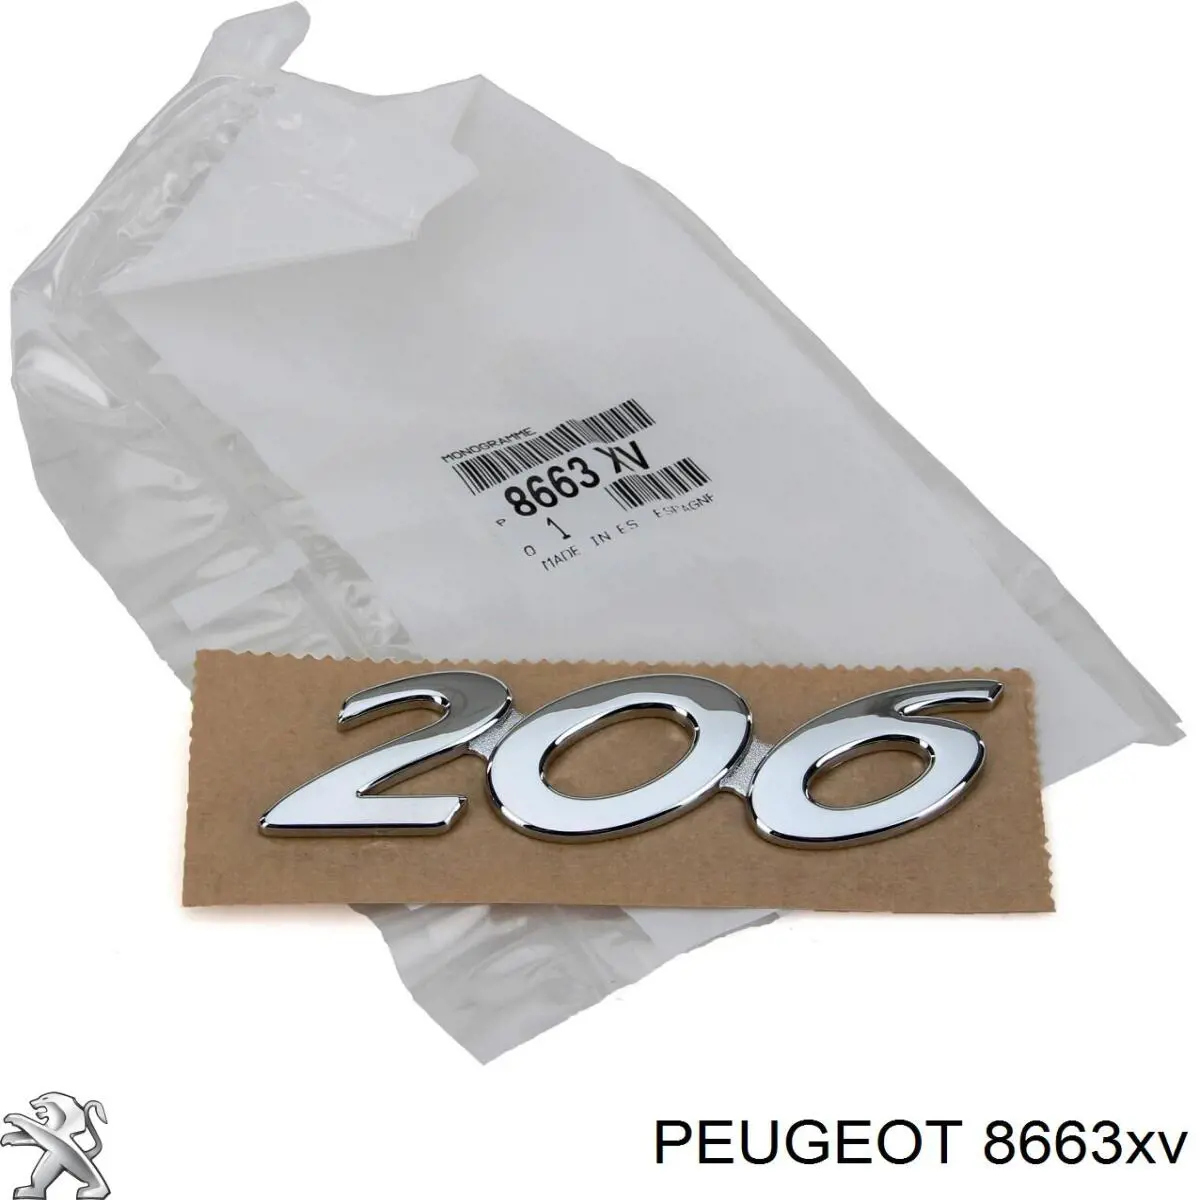 8663XV Peugeot/Citroen эмблема крышки багажника (фирменный значок)